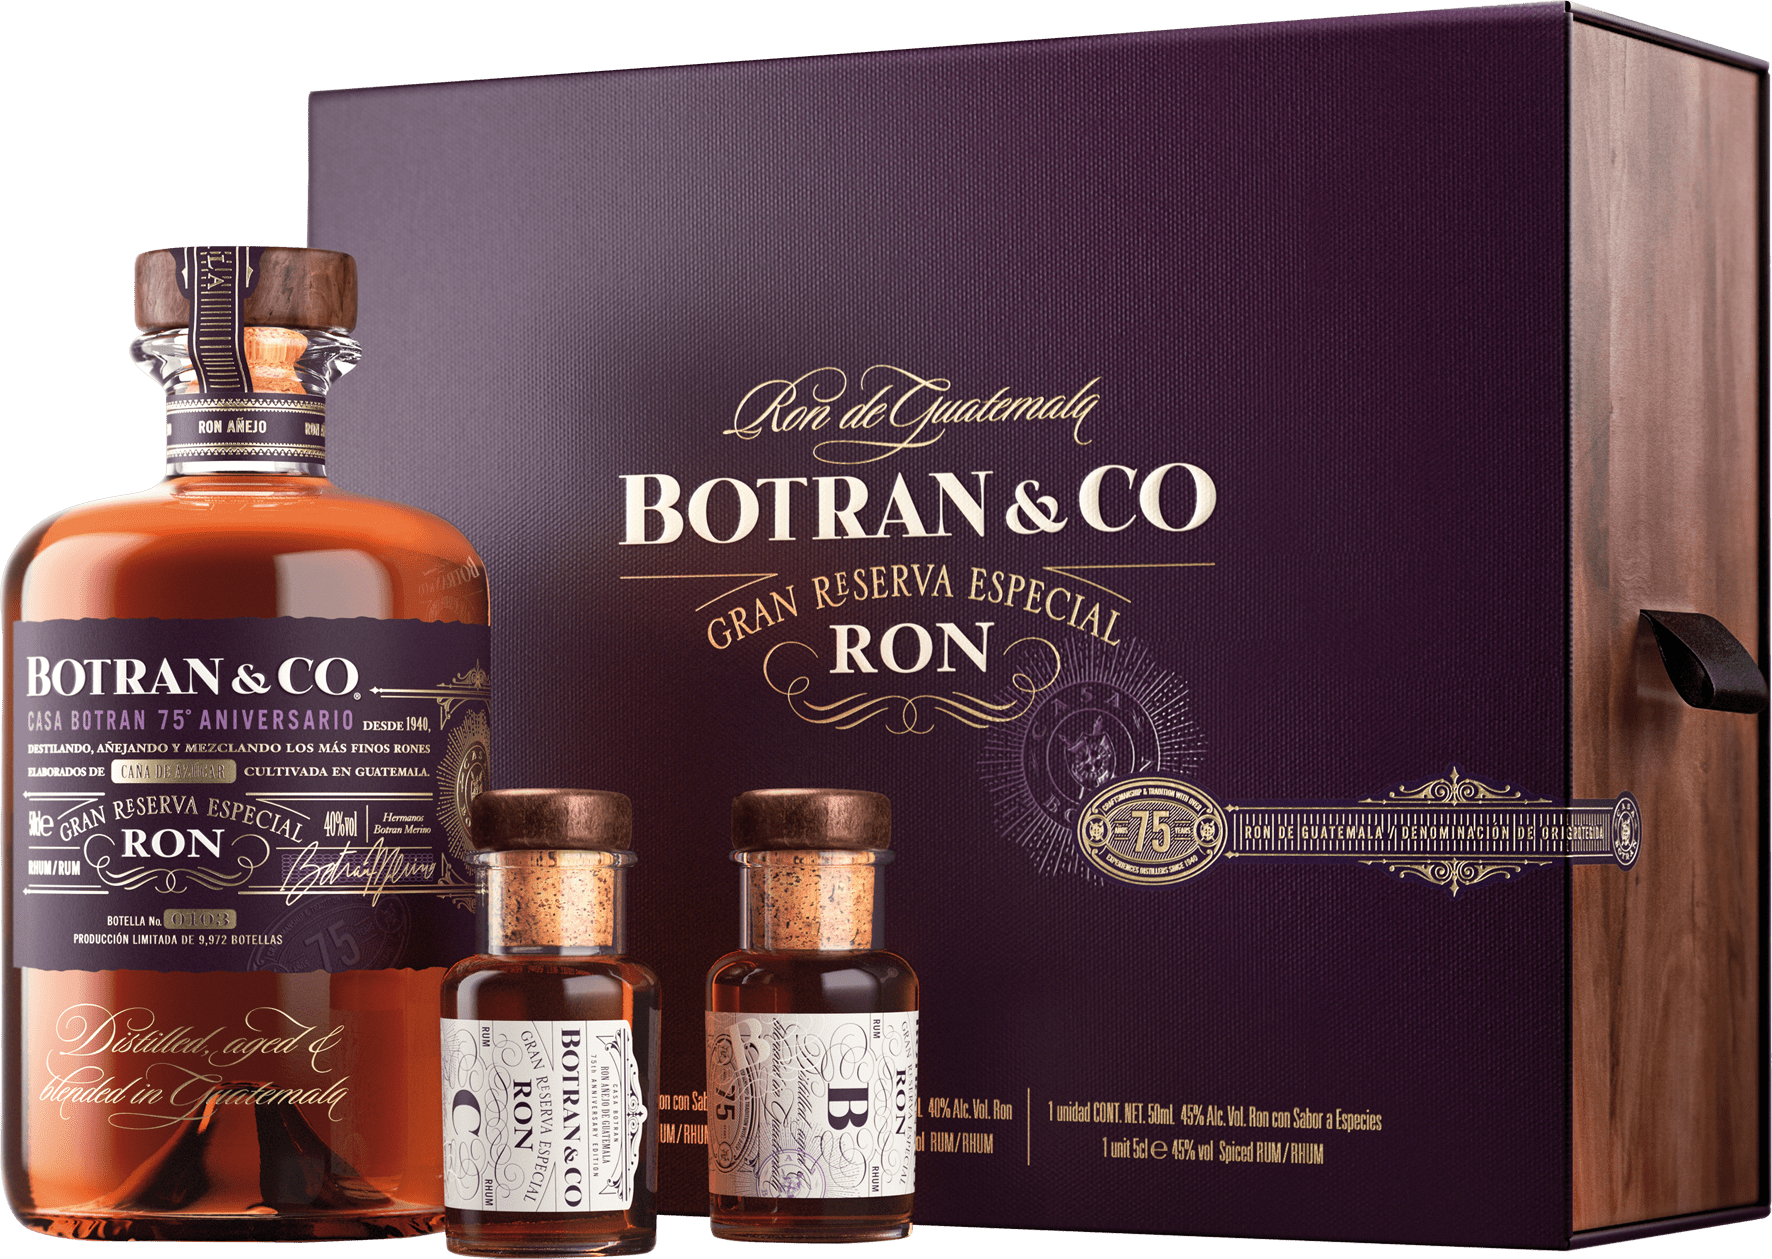 Botran & Co Gran Reserva Especial, 75th Anniversary Geschenkbox